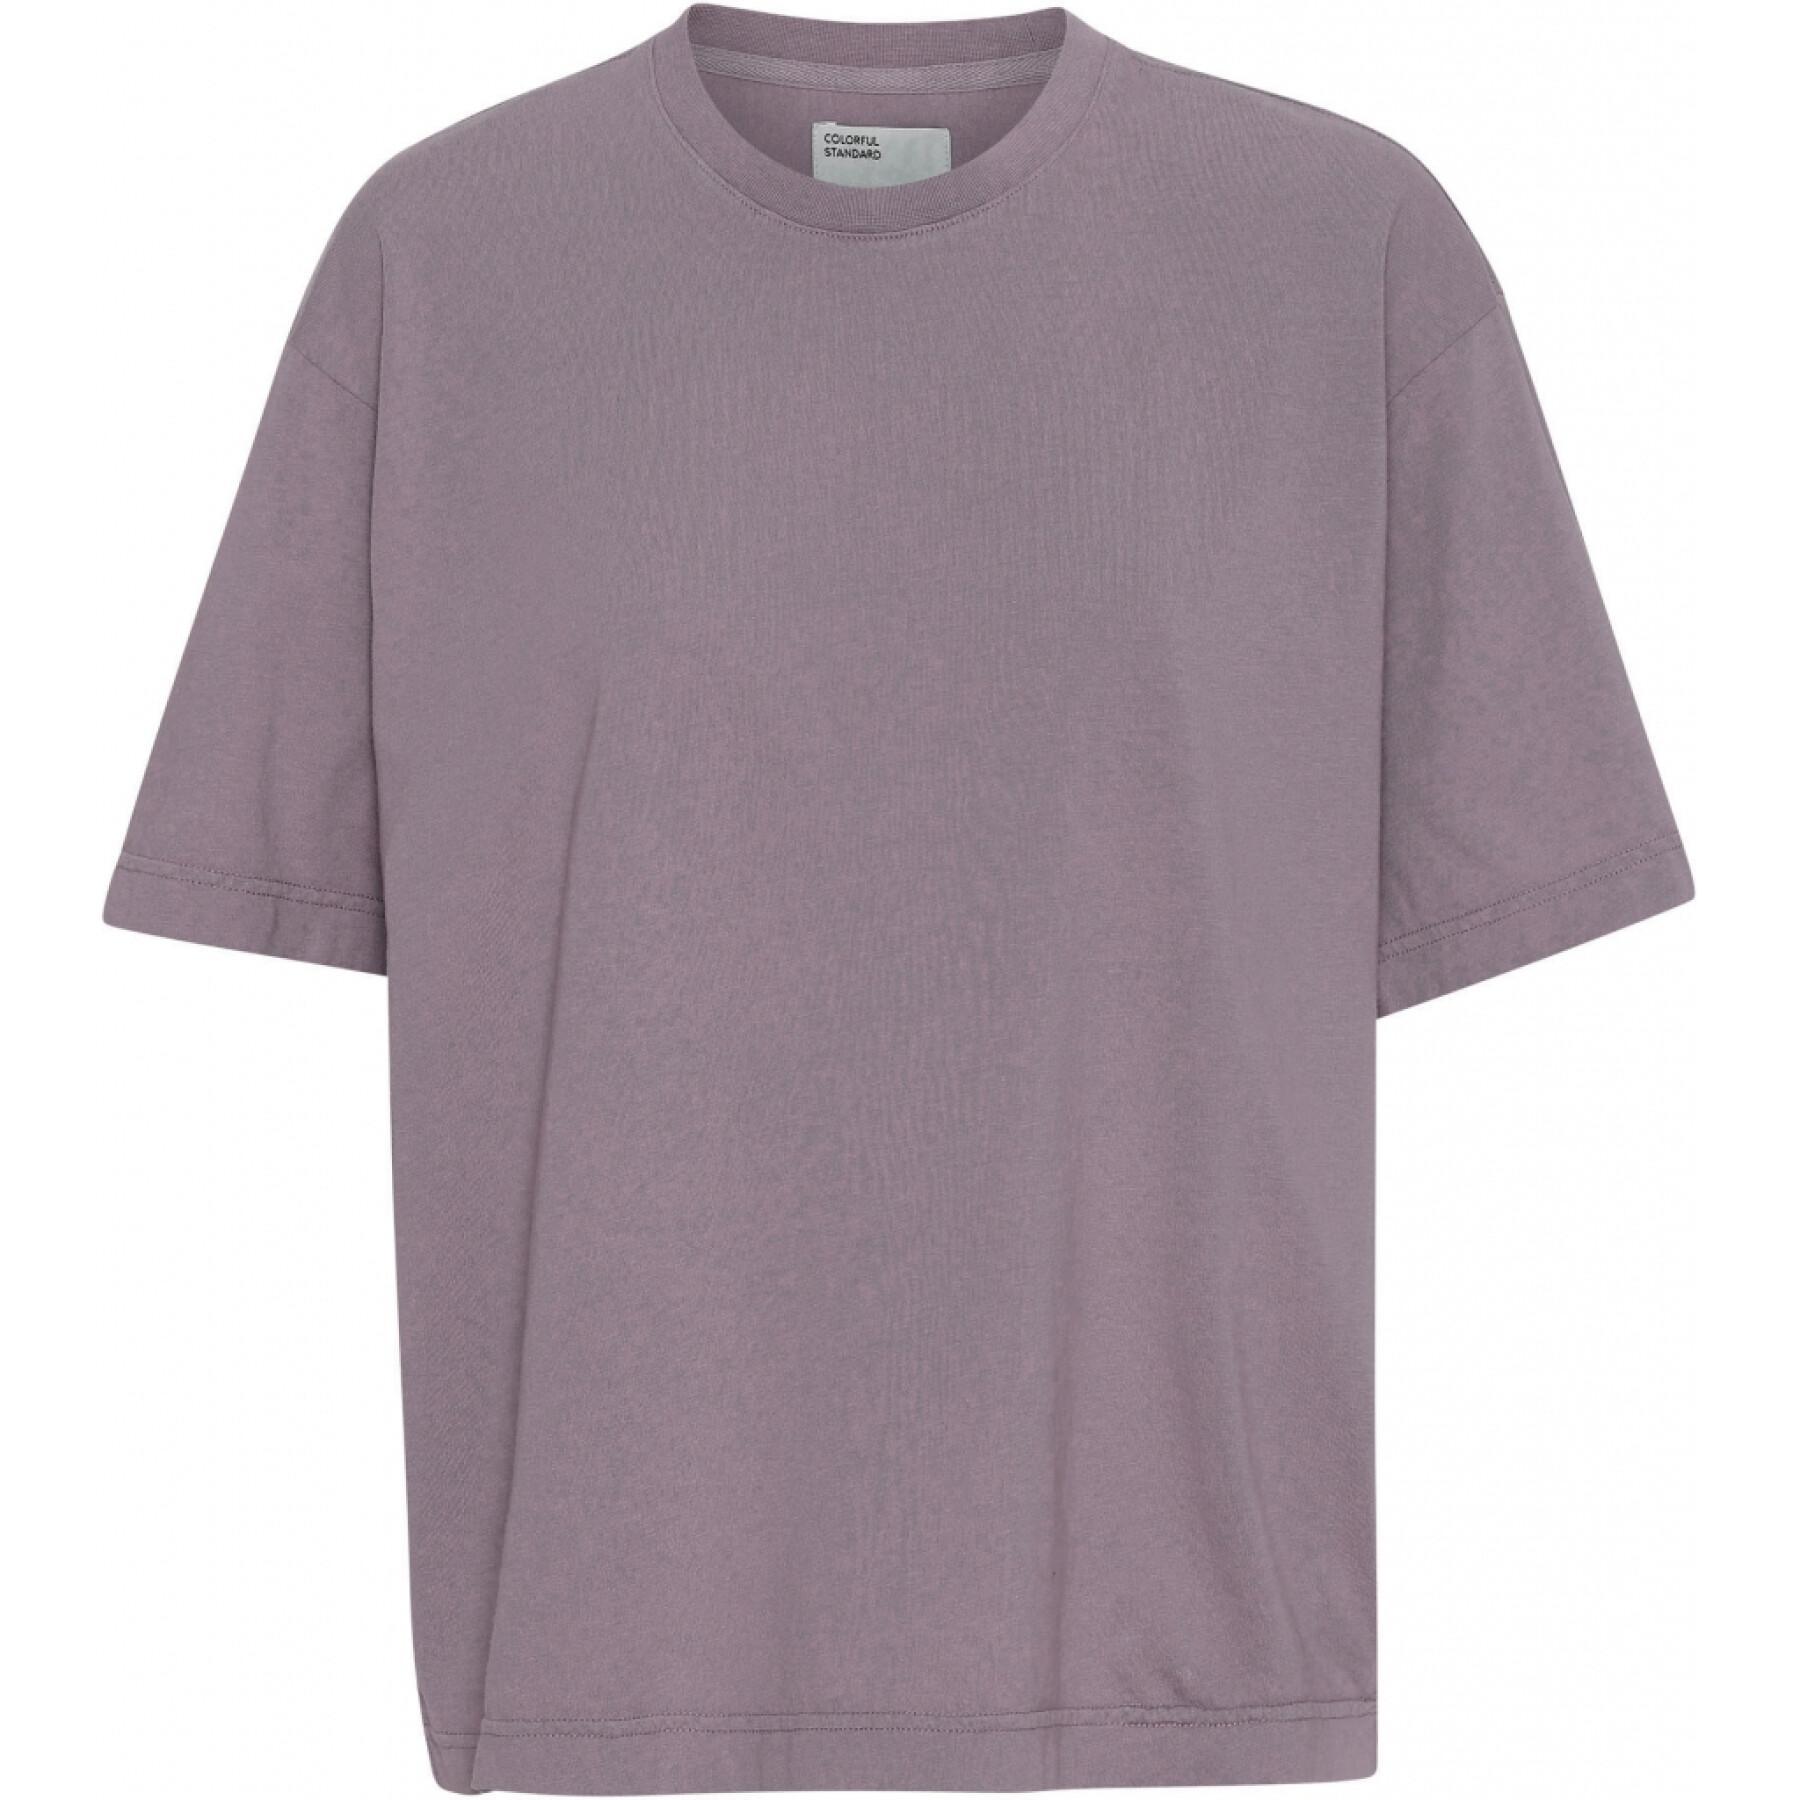 Camiseta de mujer Colorful Standard Organic oversized purple haze